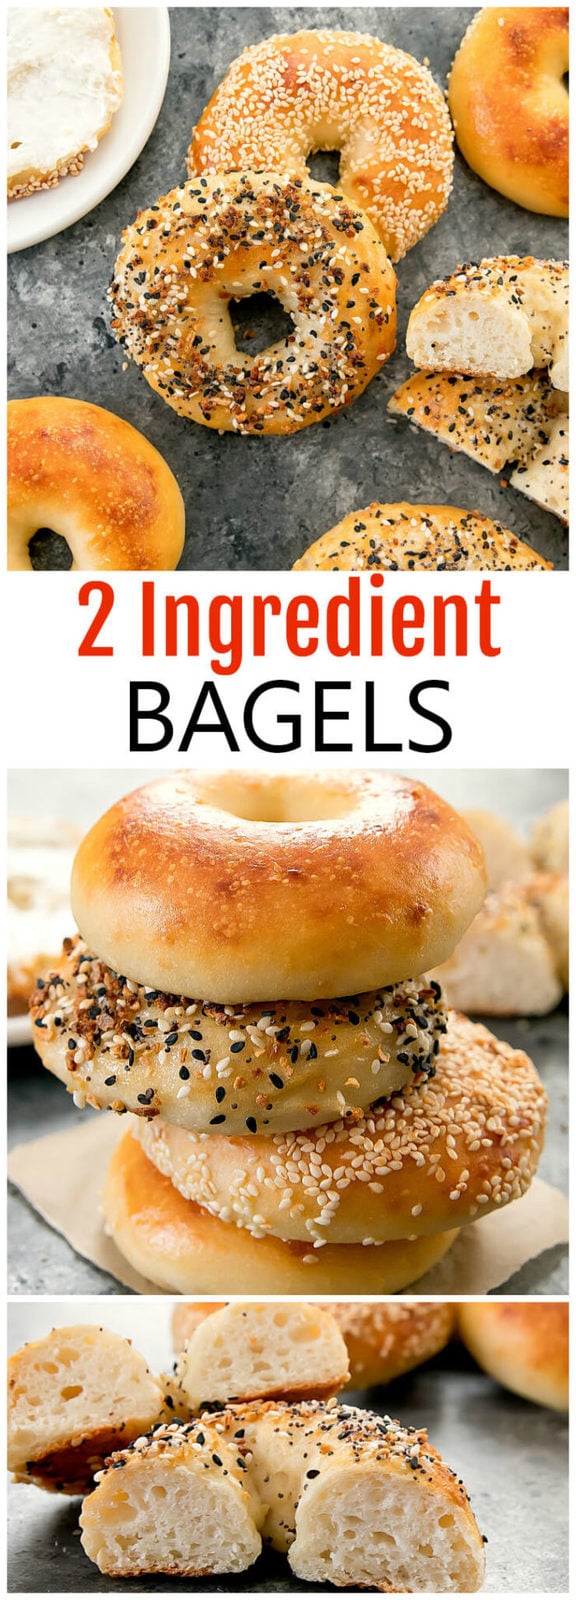 2 Ingredient Bagels